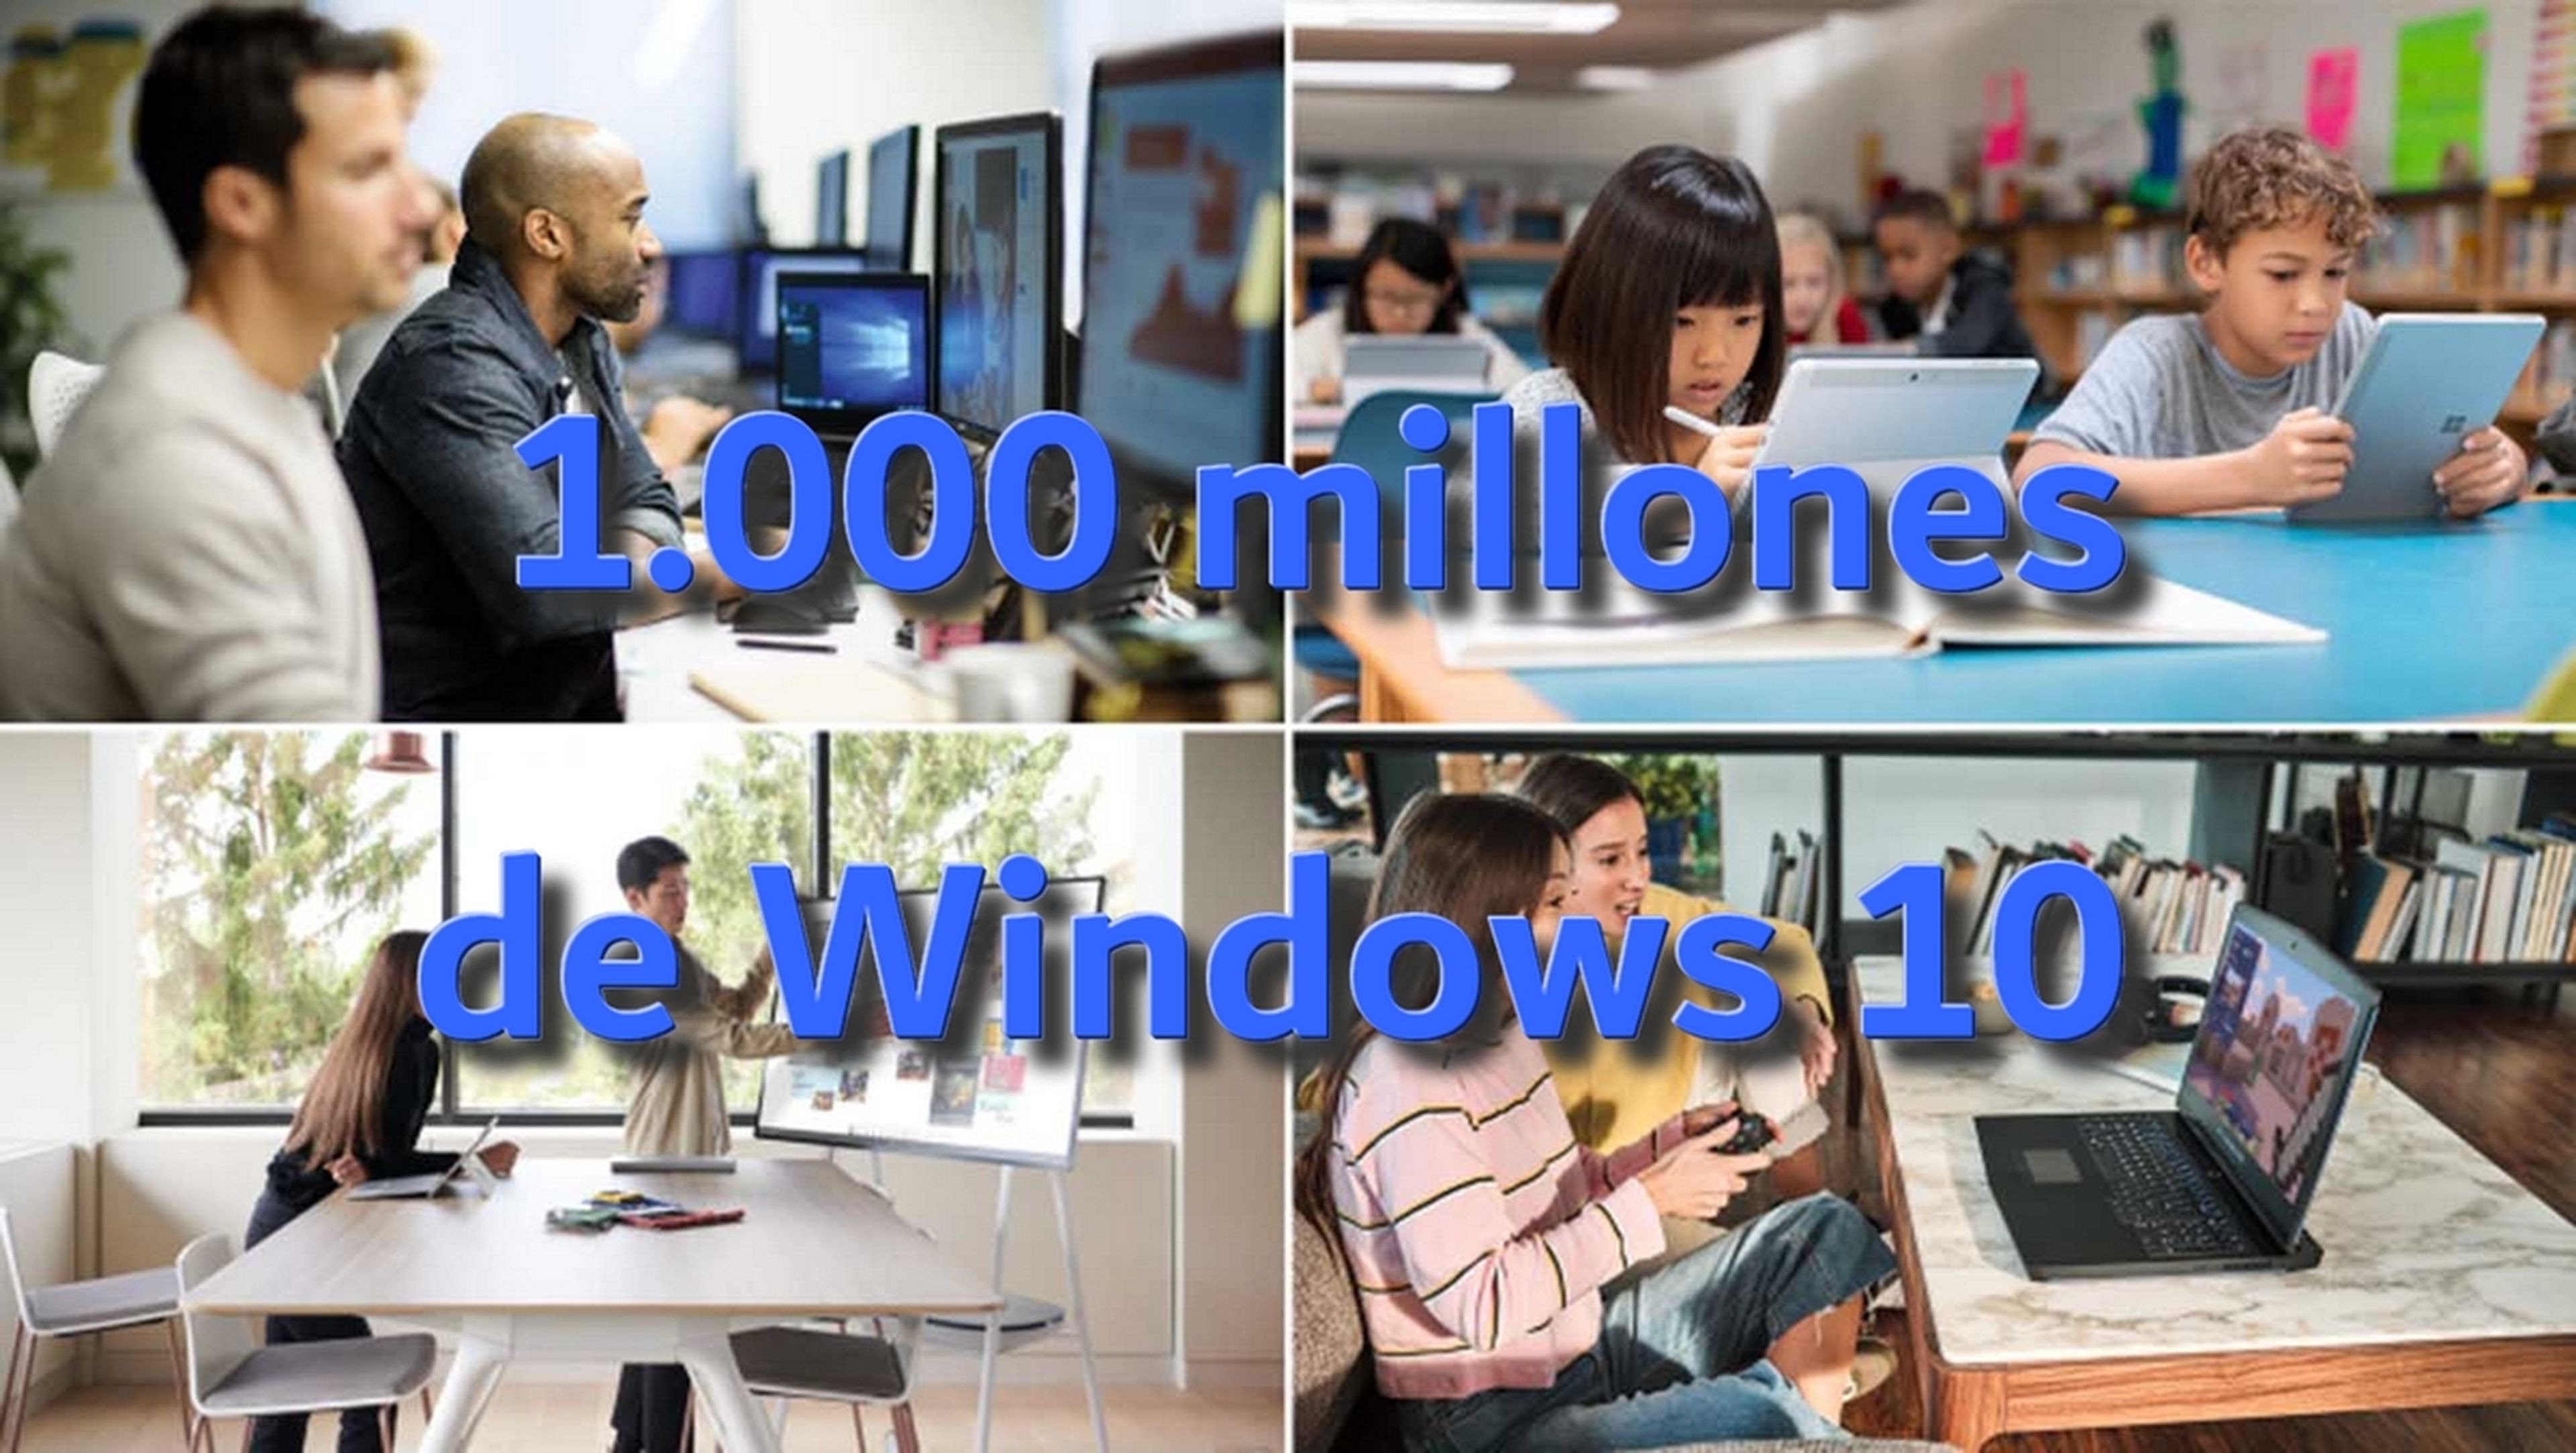 Windows 10 alcanza los 1000 millones de dispositivos activos, dos años después de lo esperado